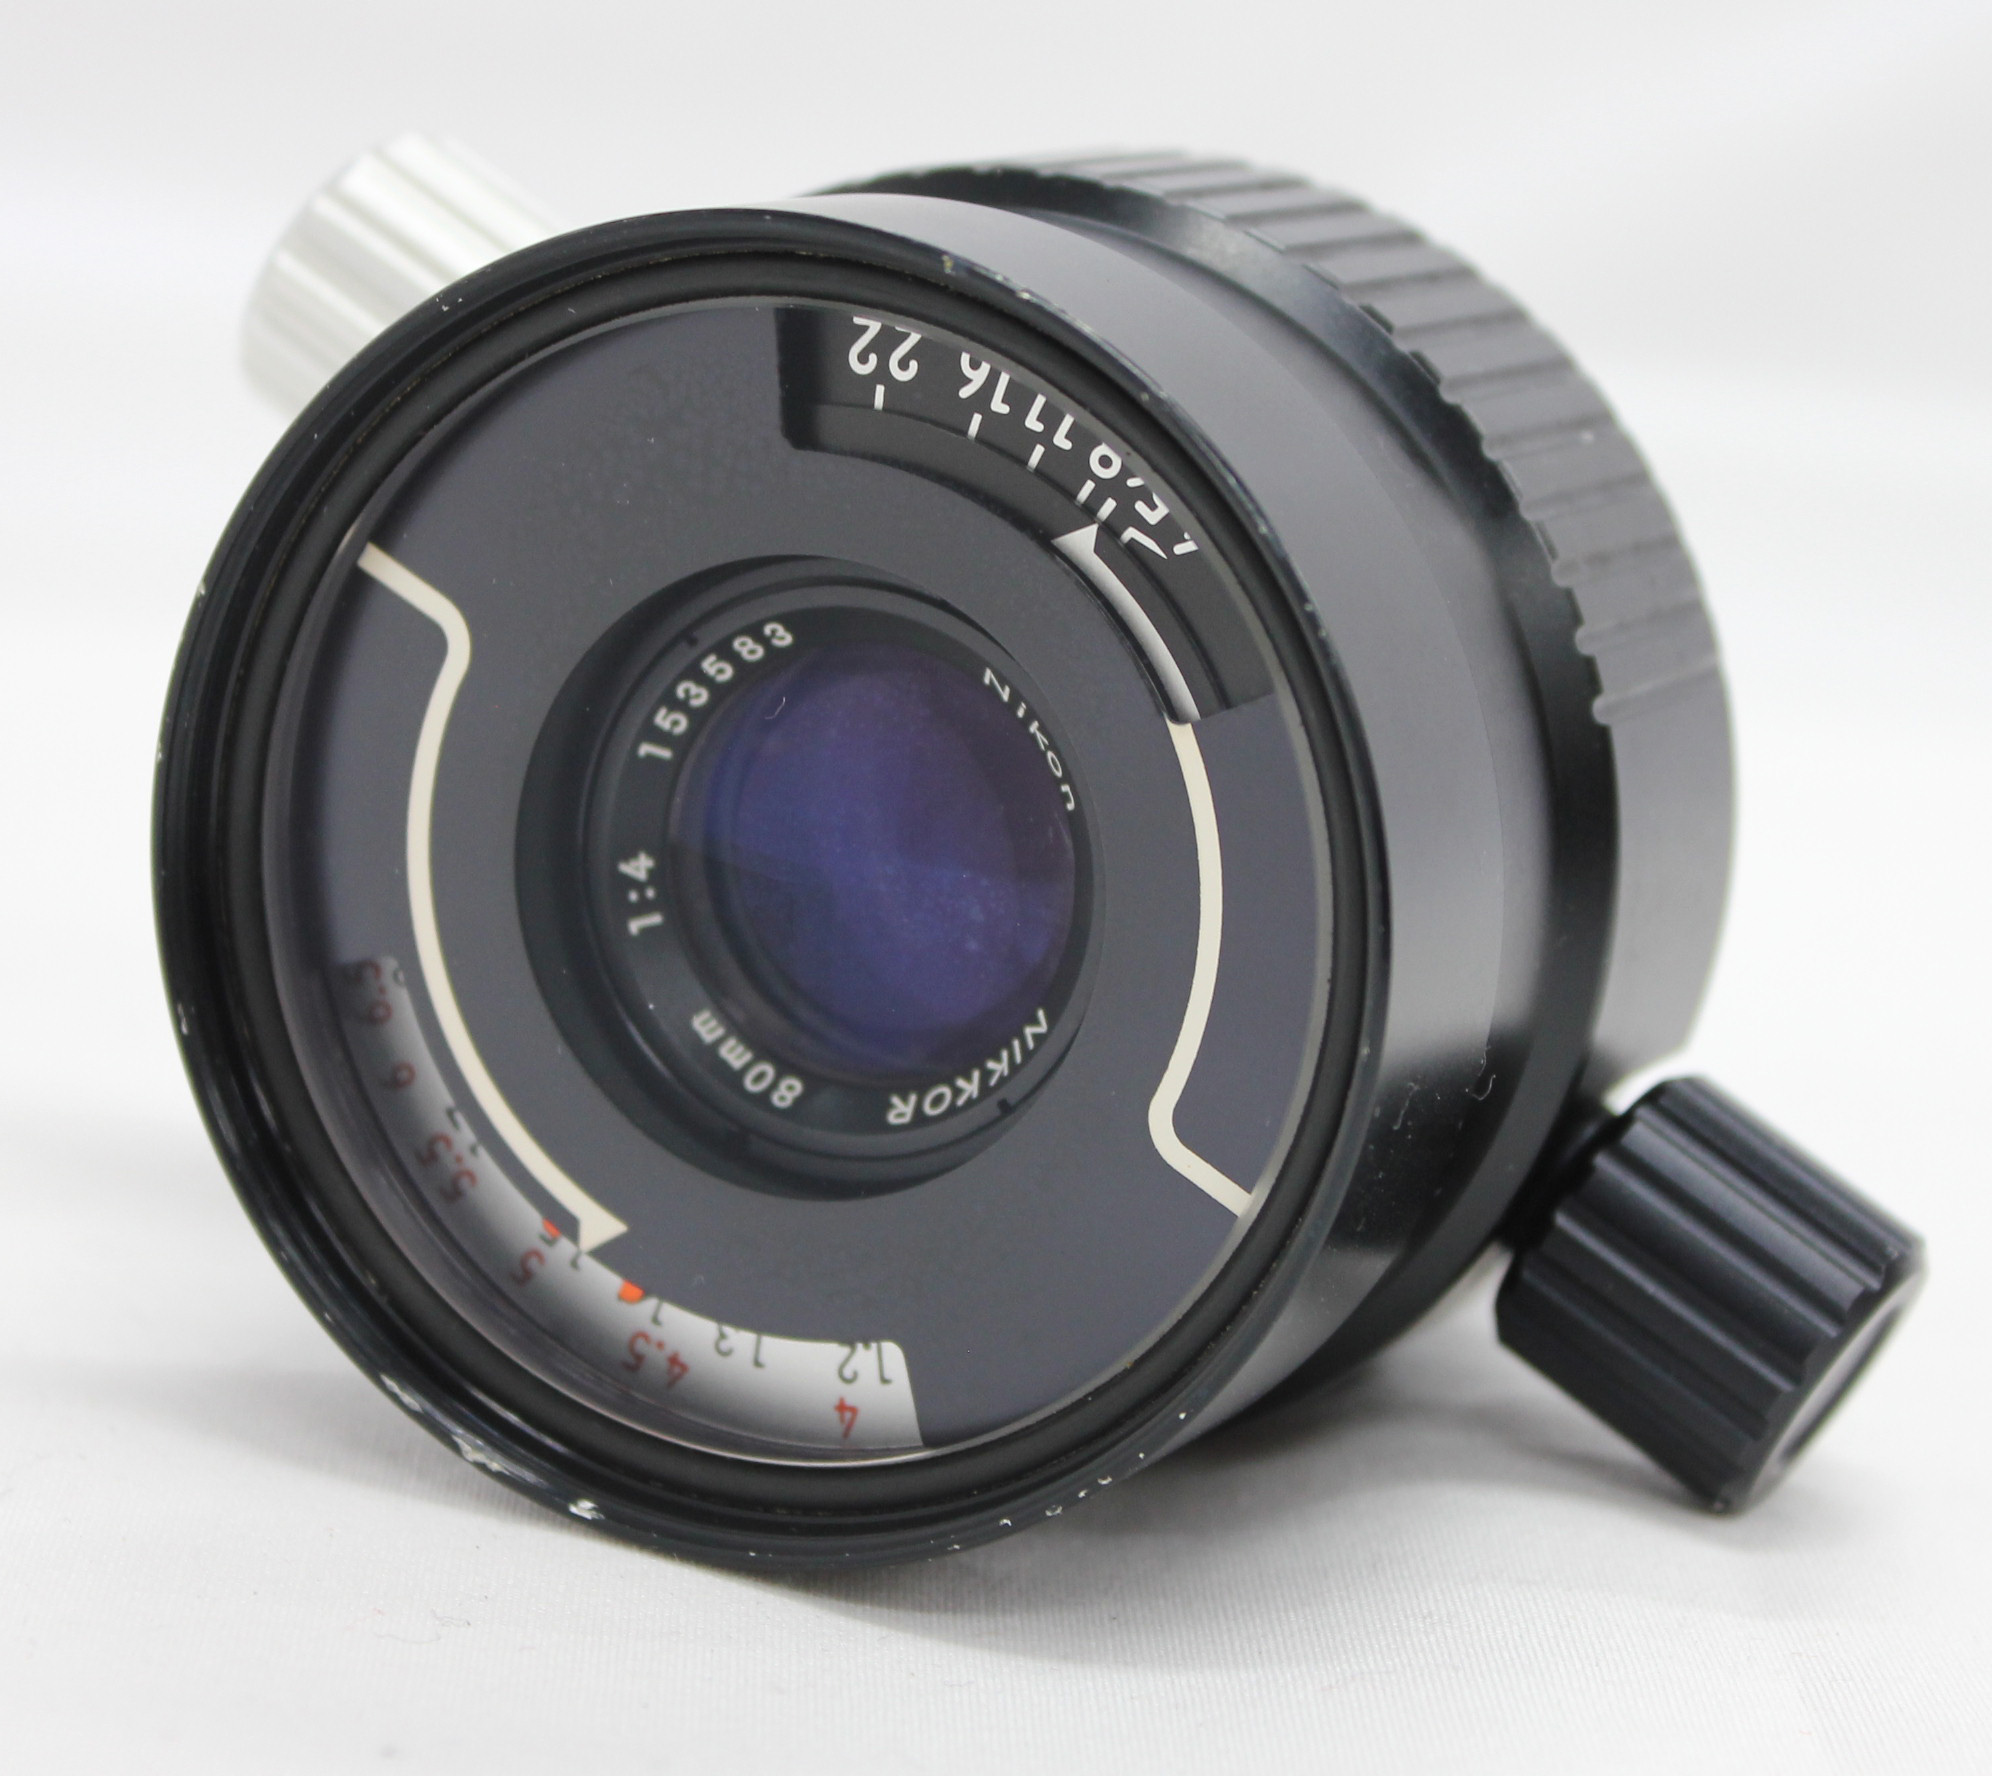 Japan Used Camera Shop | [Excellent+++++] Nikon Nikkor 80mm F4 Under Water Lens for NIKONOS from Japan